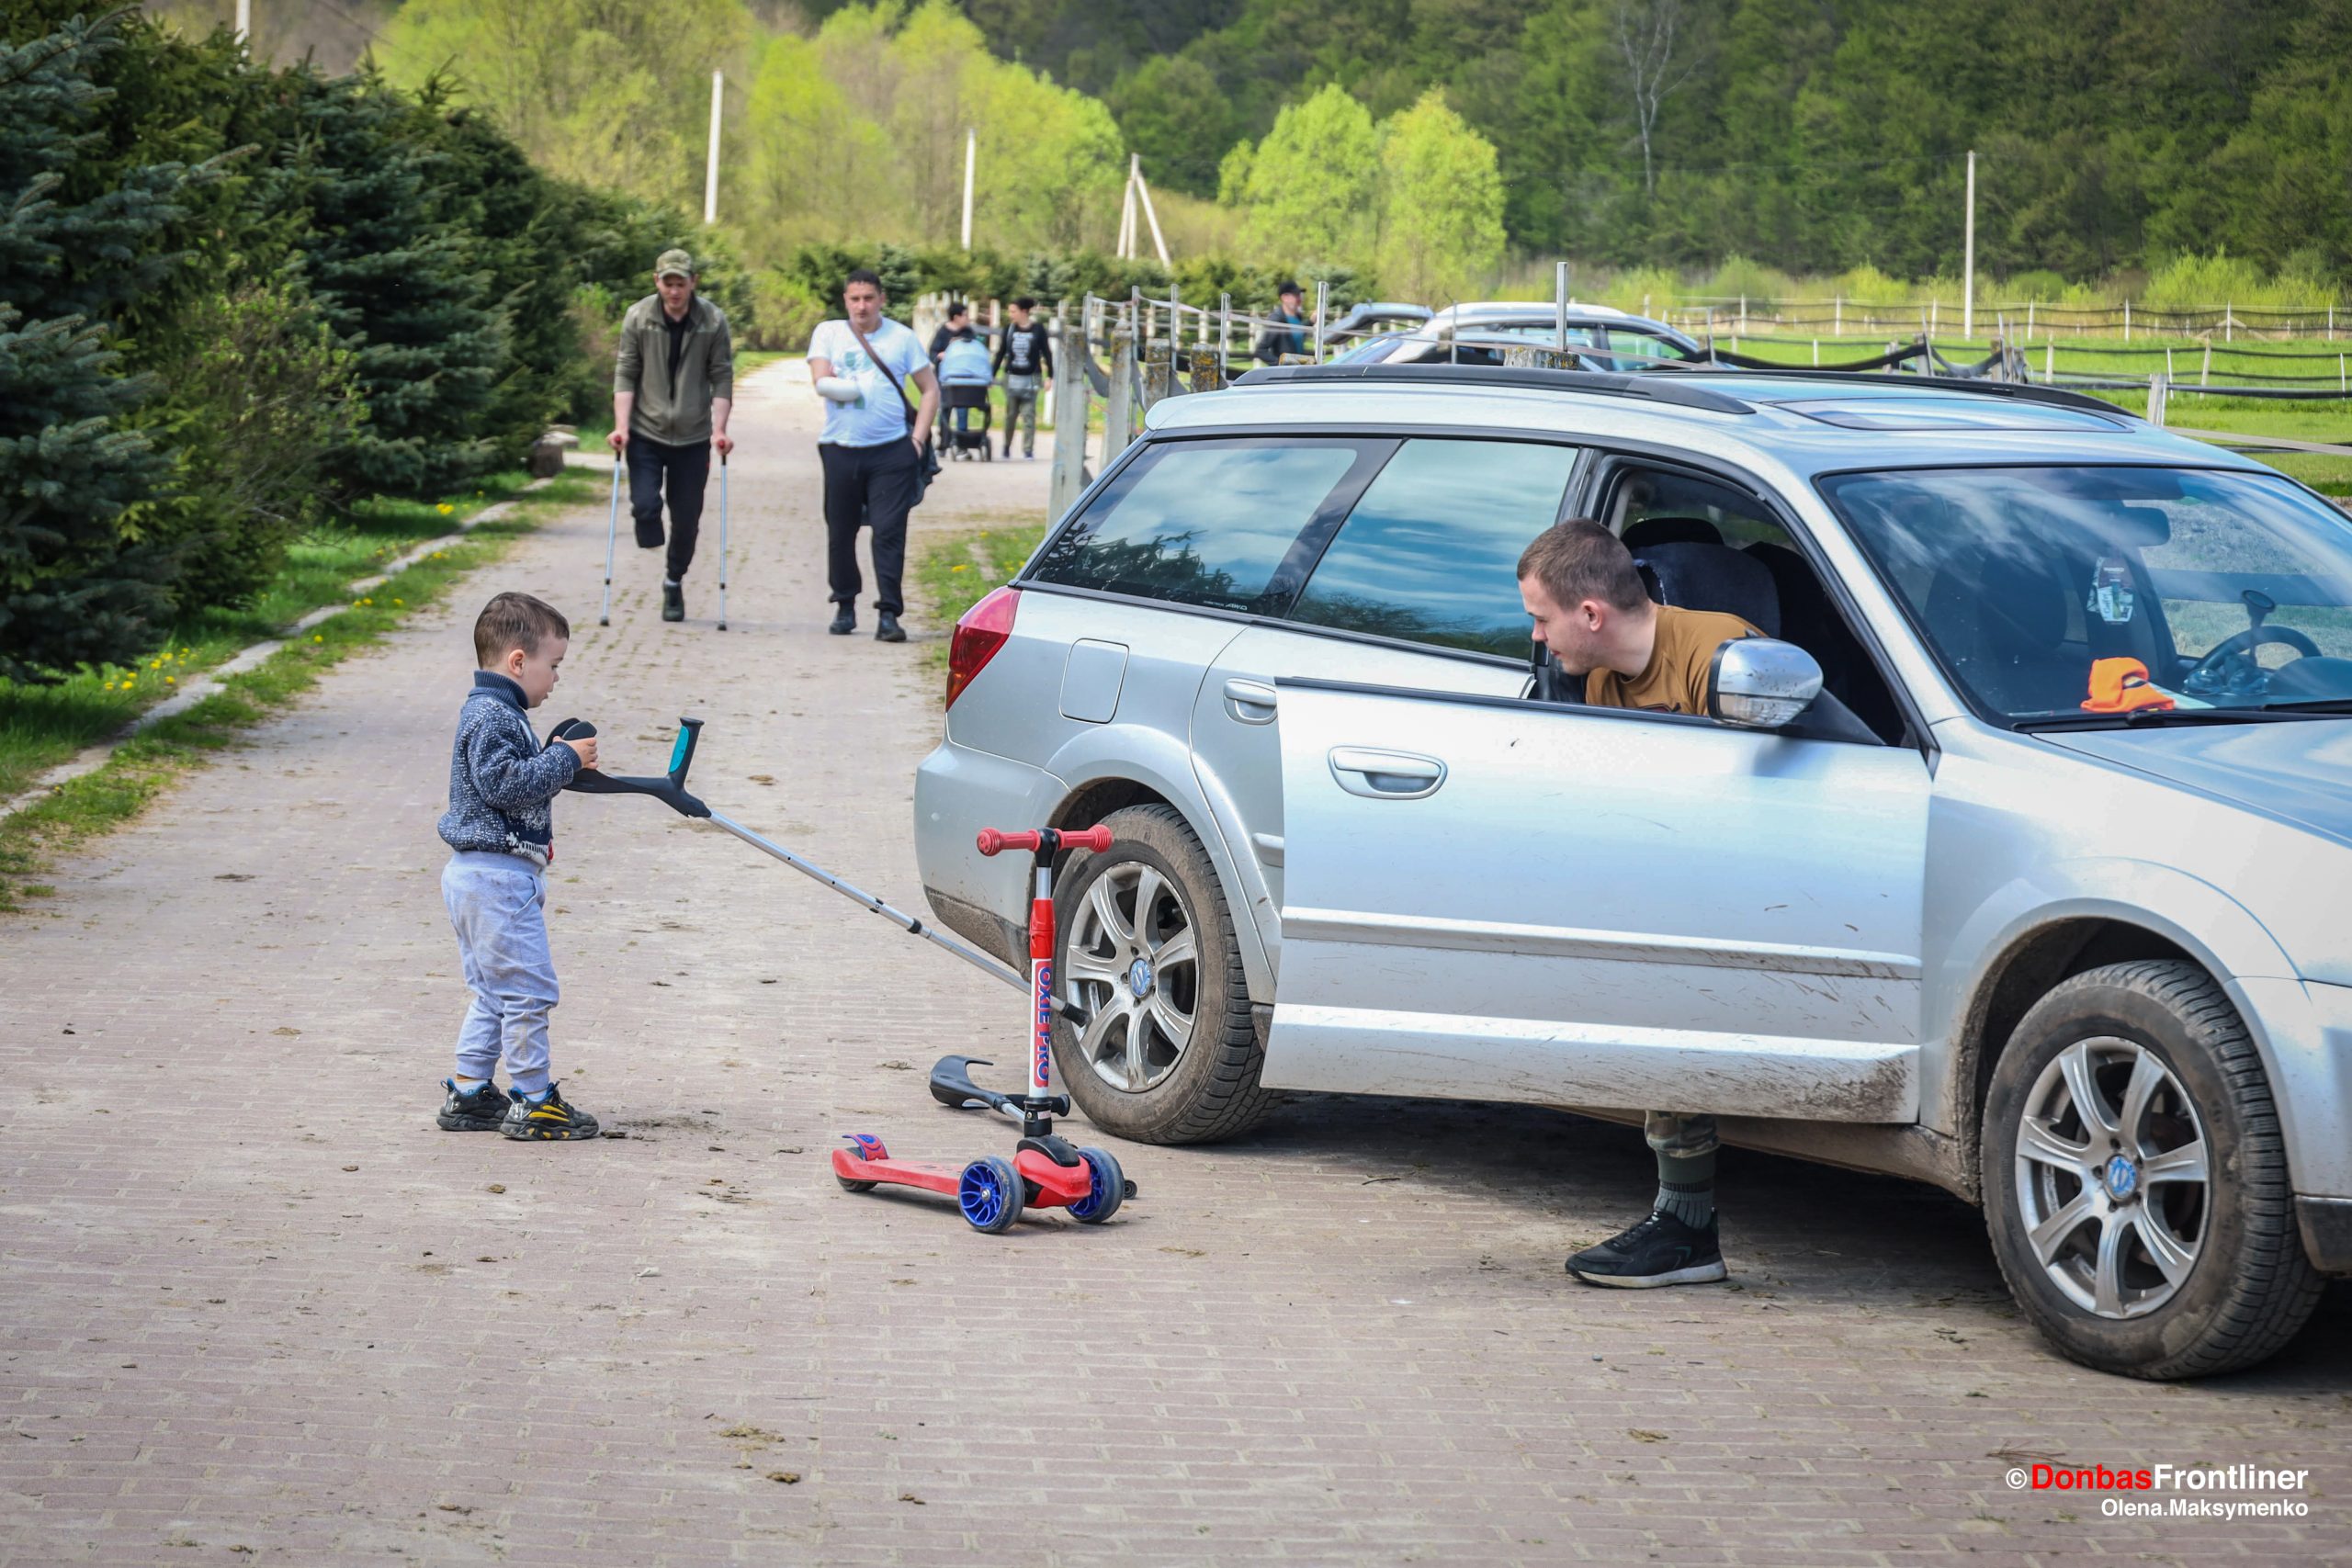 Donbas Frontliner / Син одного з військових знаходить нове застосування милицям